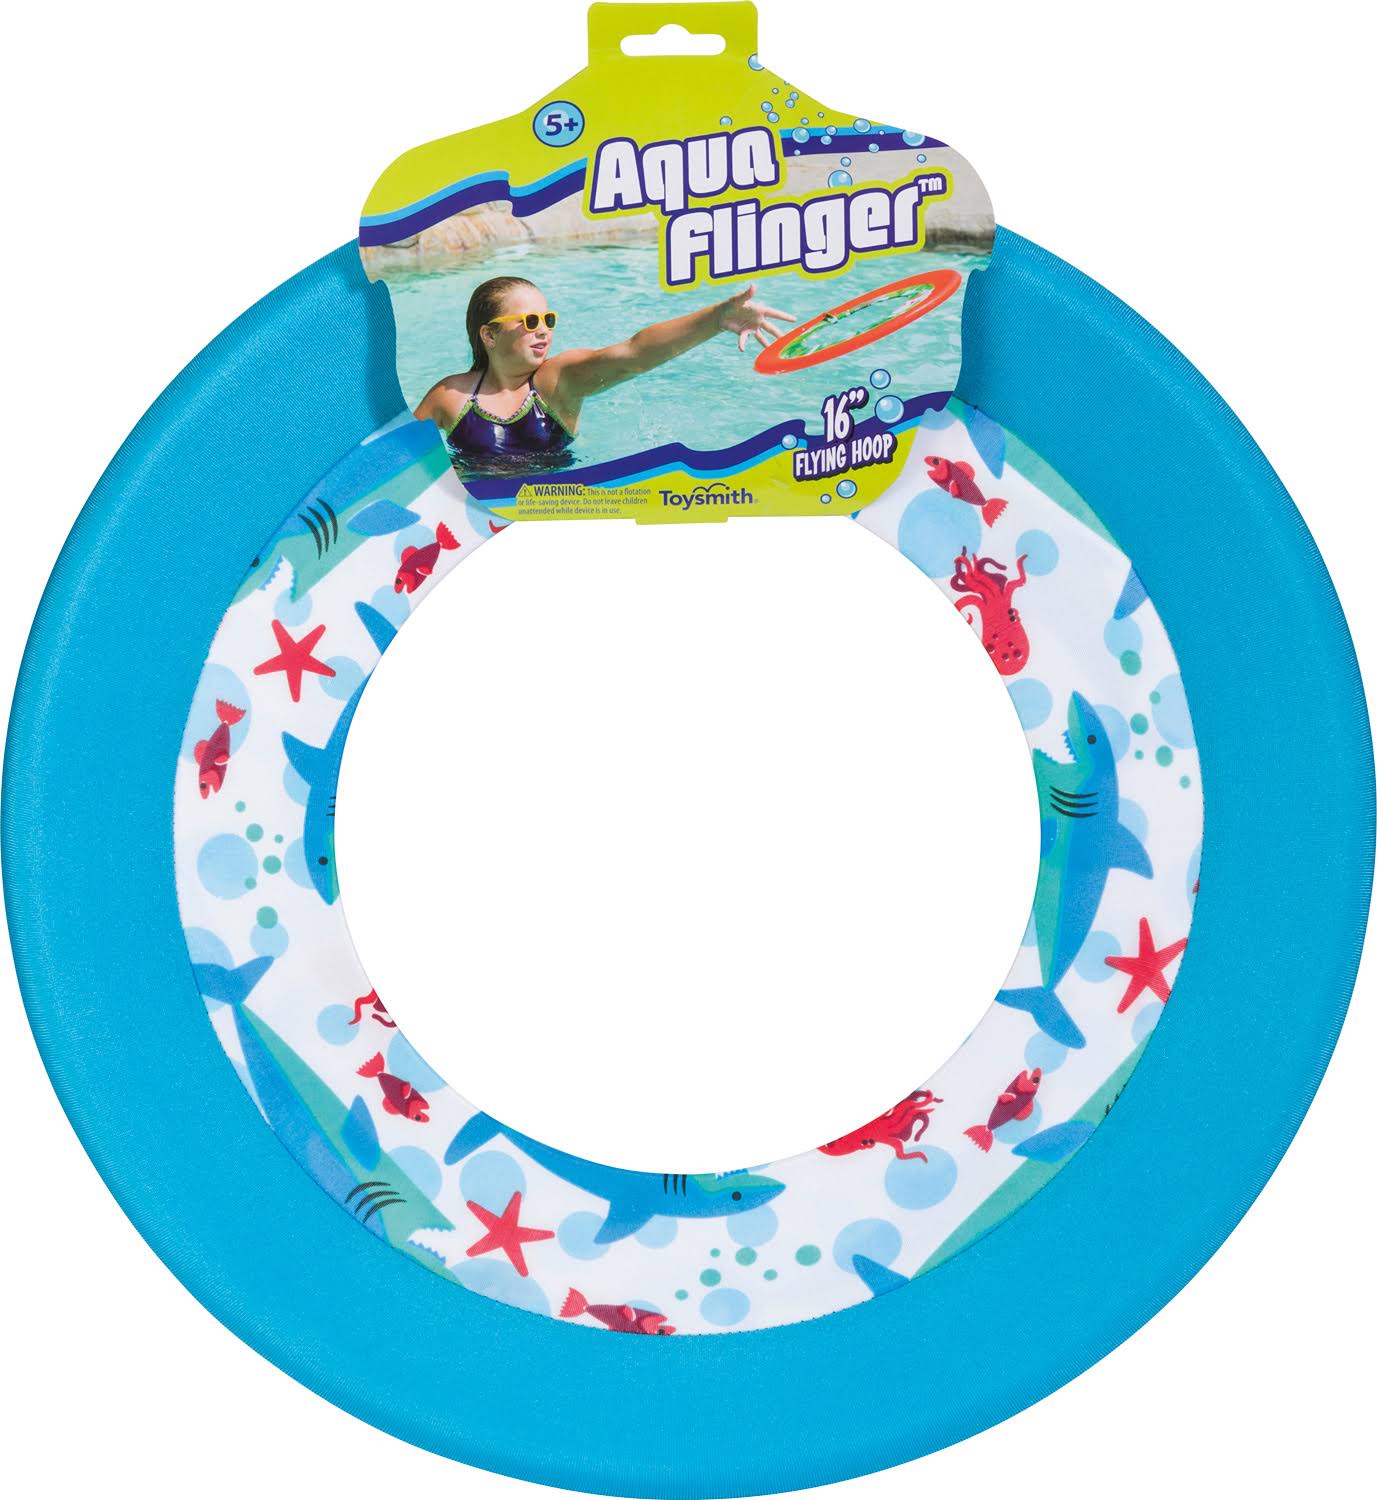 Toysmith Aqua Flinger (Assorted Colors)